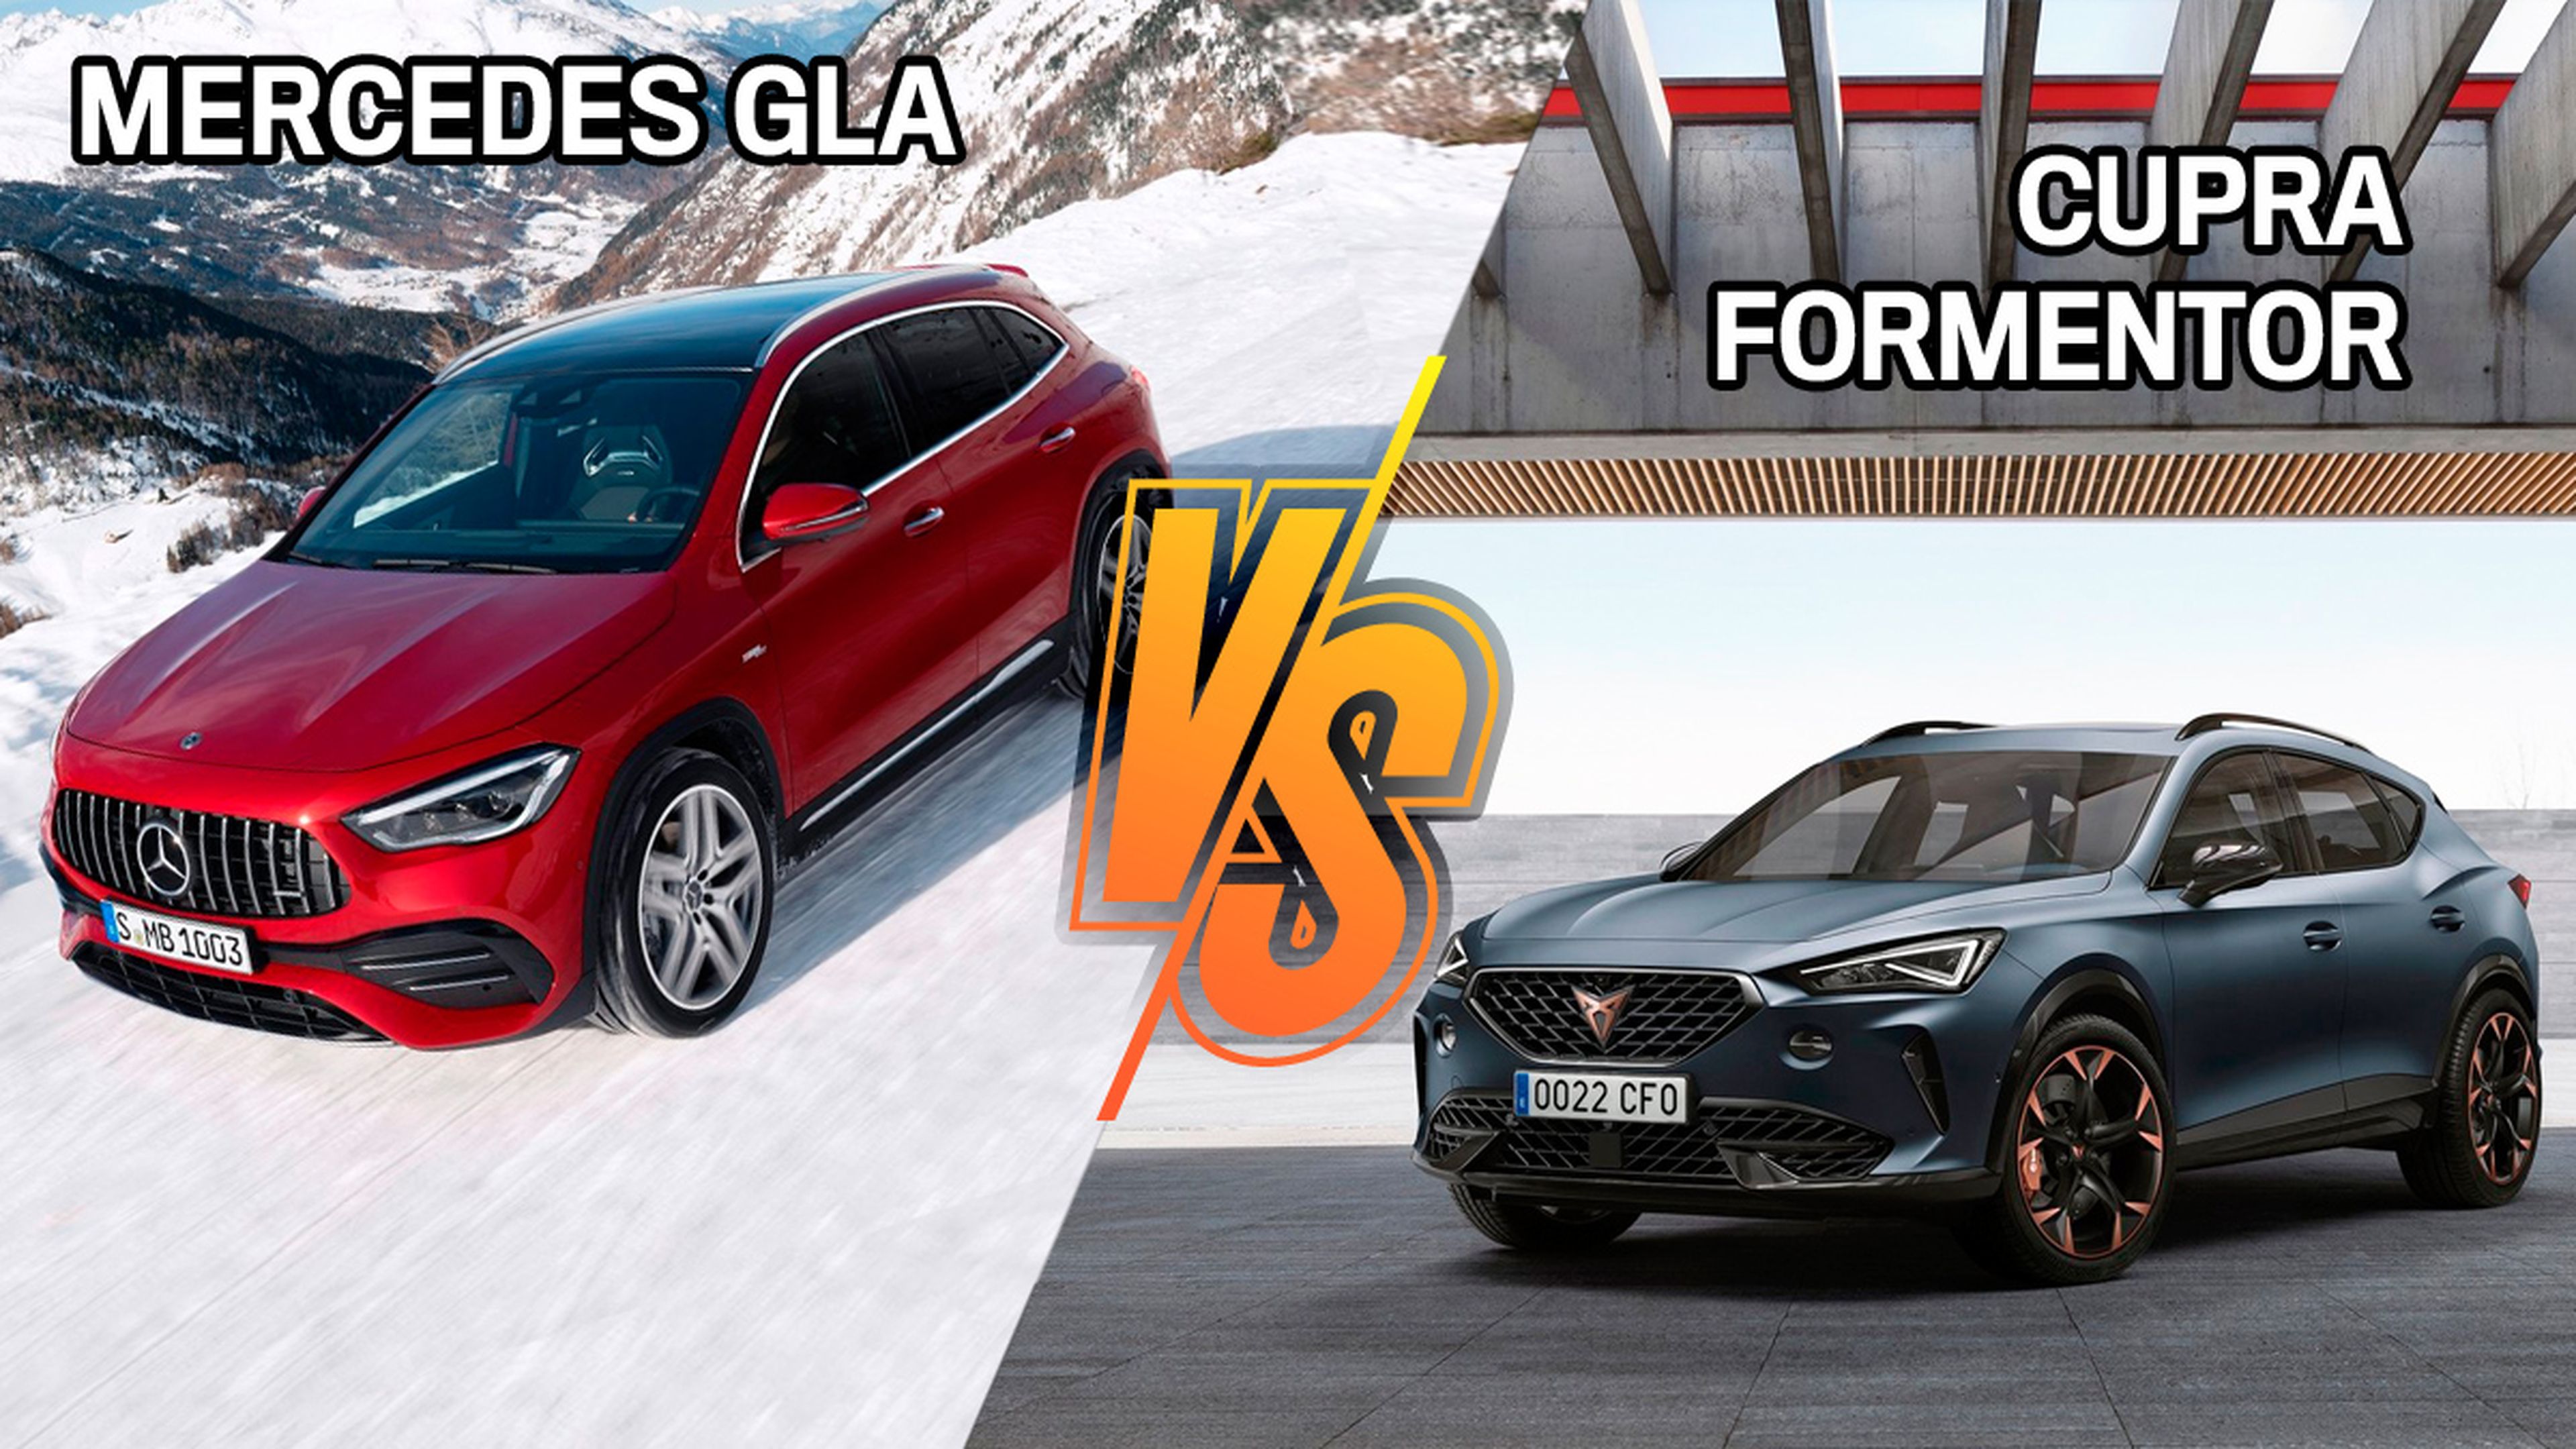 Cupra Formentor o Mercedes GLA, ¿cuál comprar?